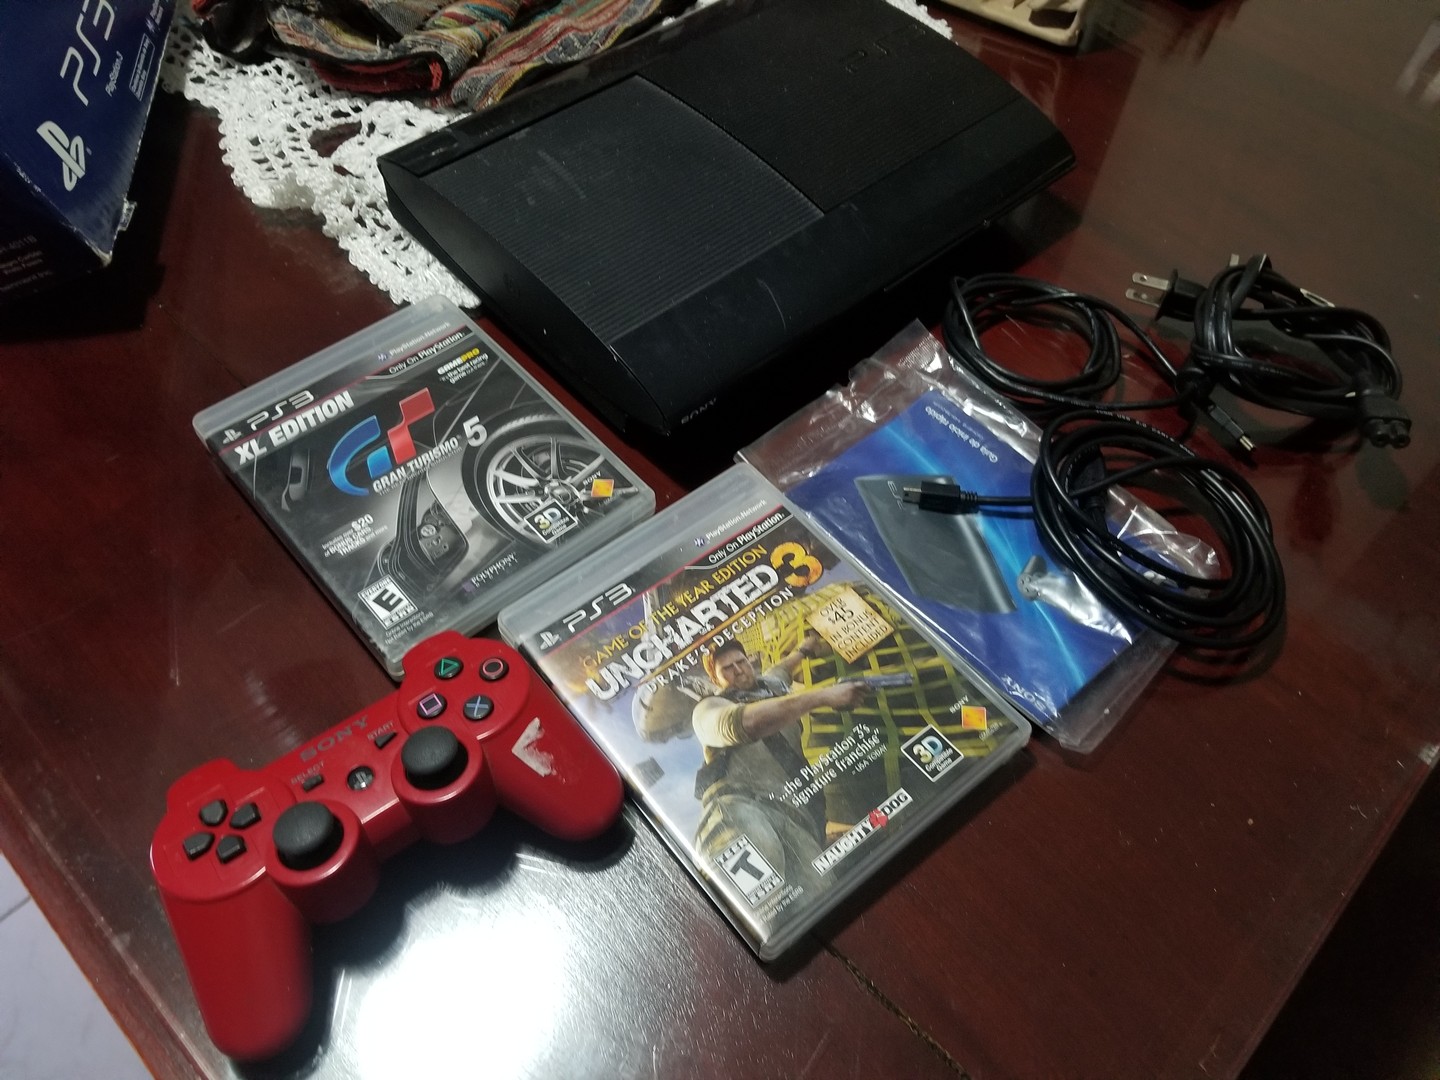 consolas y videojuegos - PlayStation3 súper slim